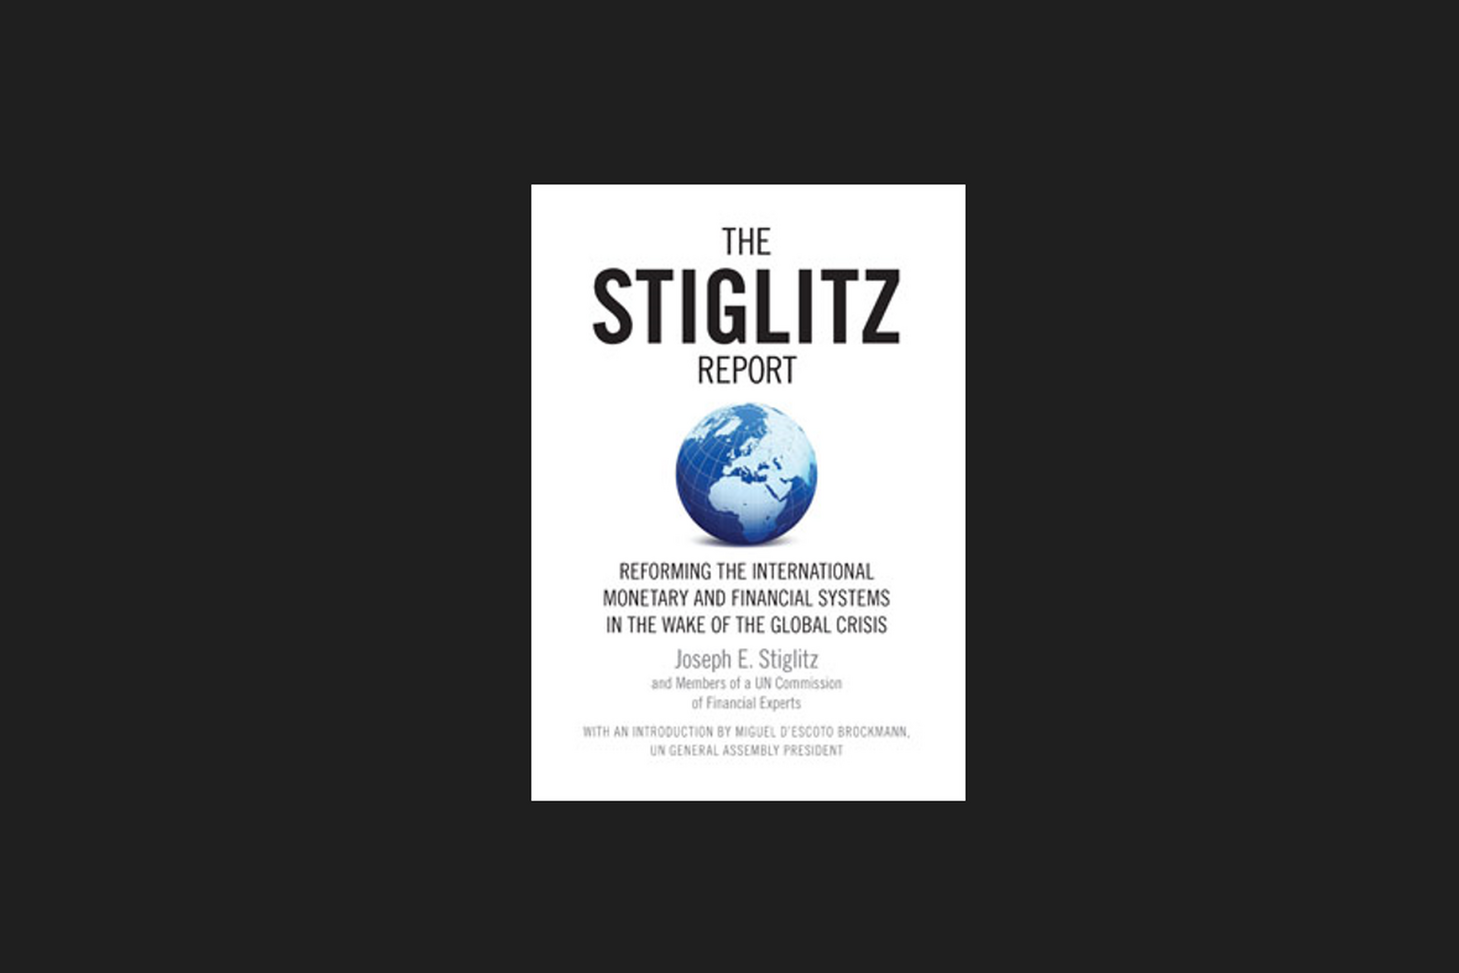 Book by Joseph E. Stiglitz